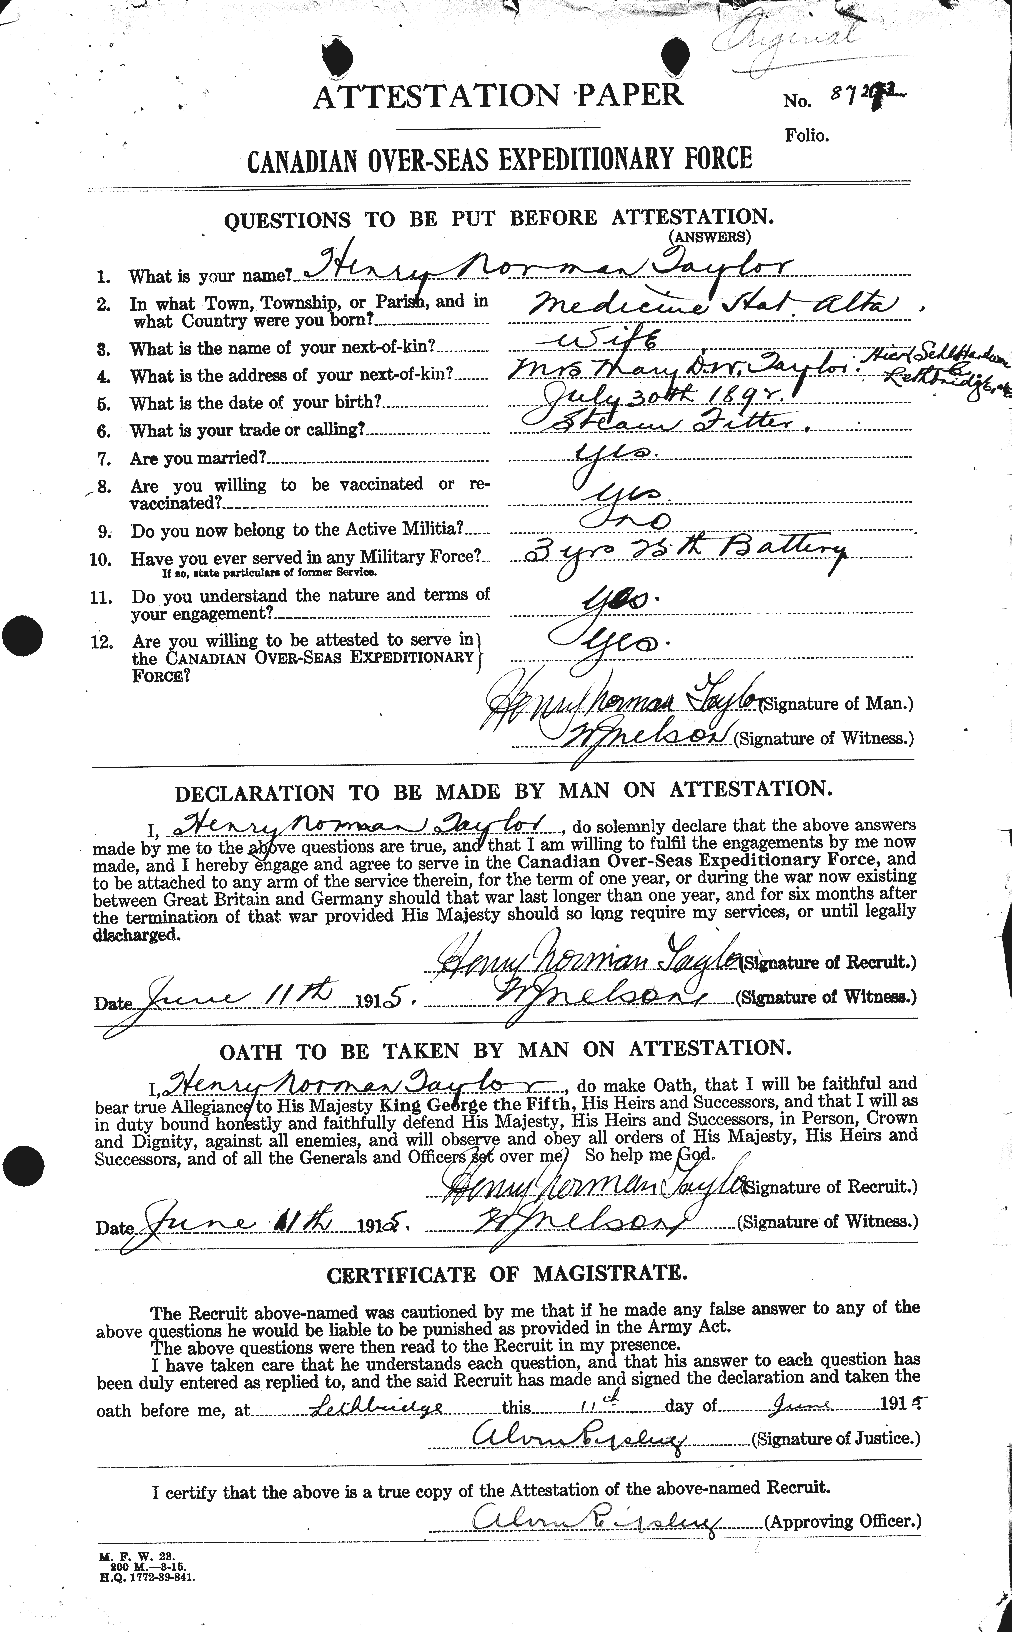 Dossiers du Personnel de la Première Guerre mondiale - CEC 626551a